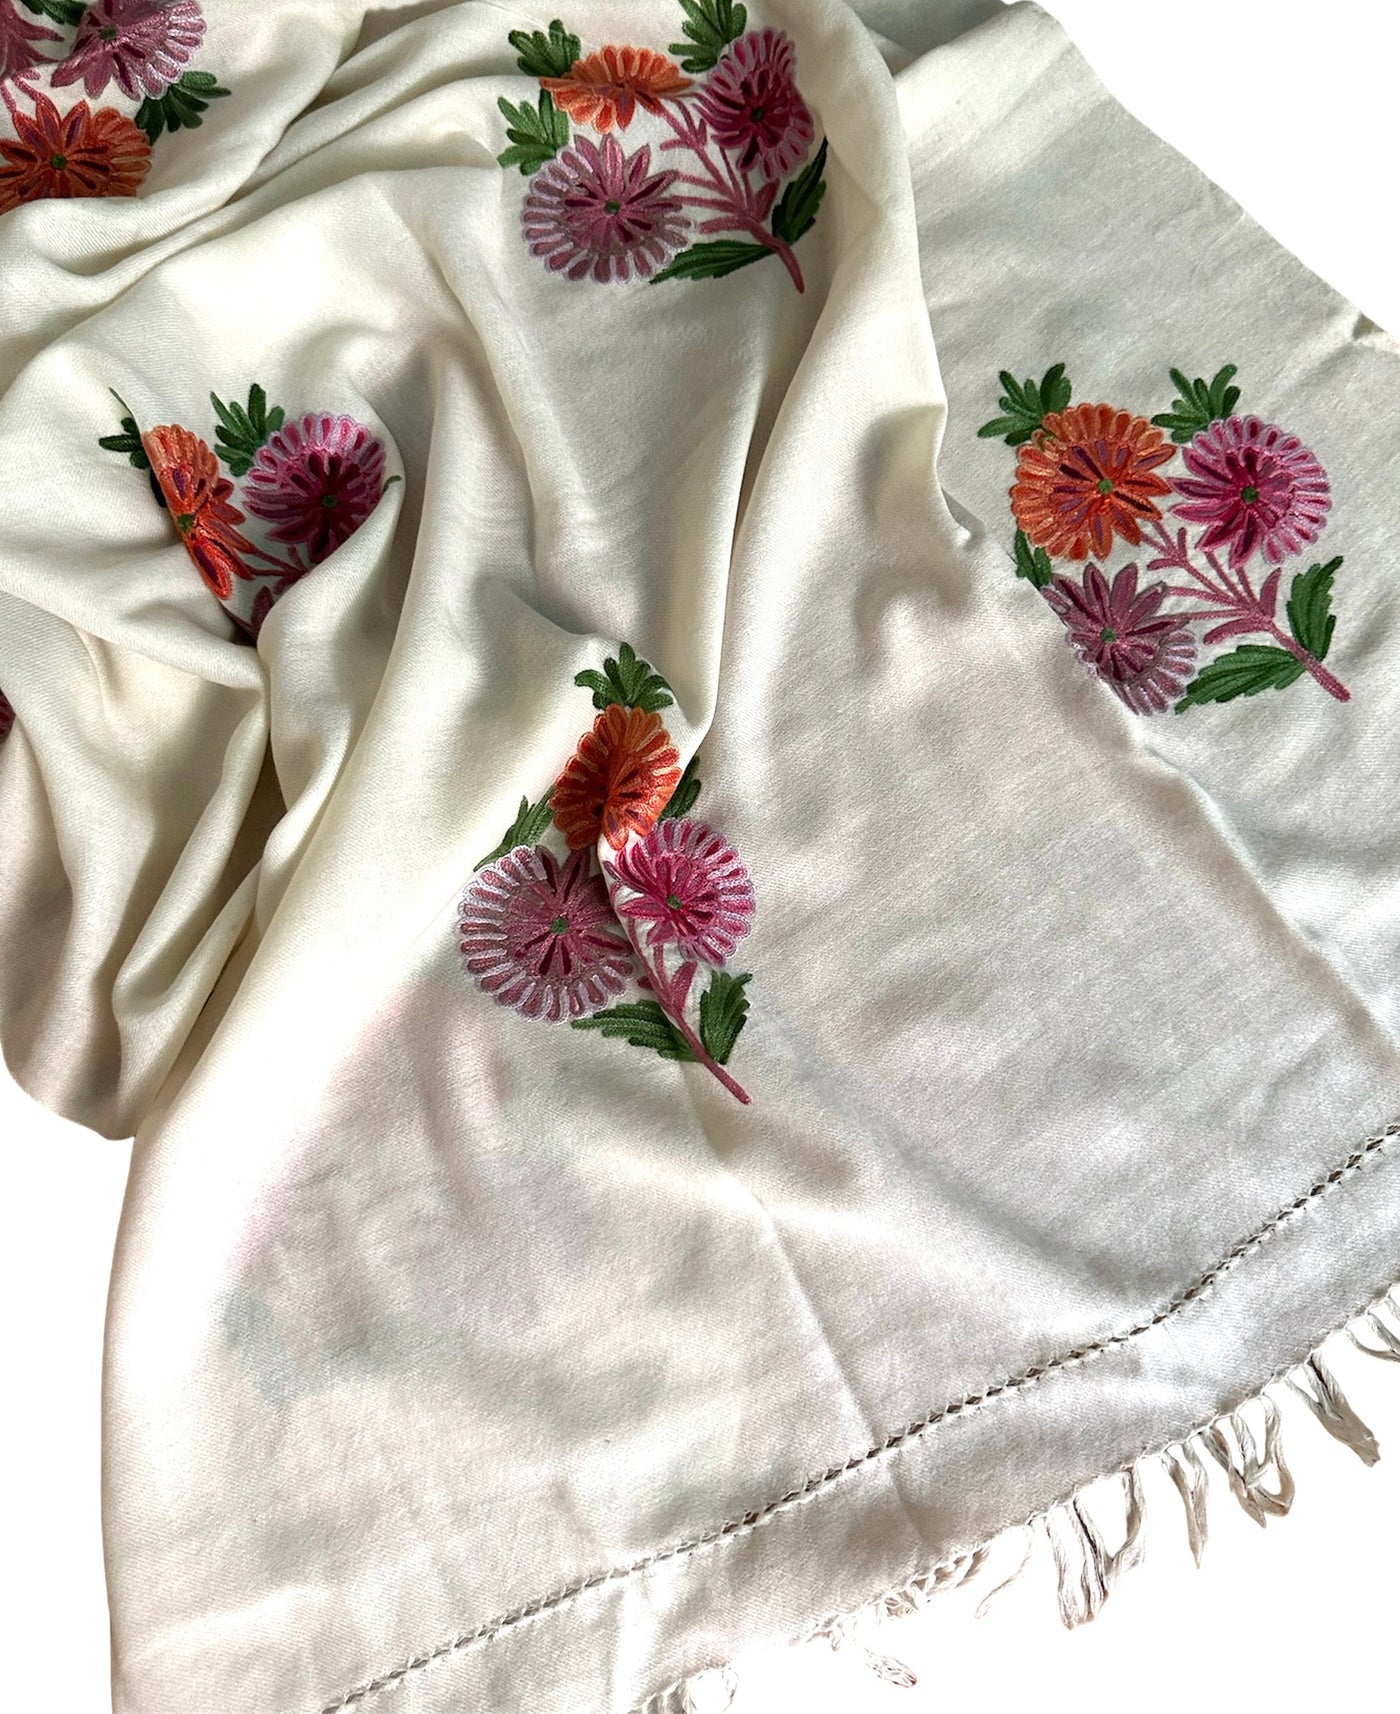 Dahlia shawl